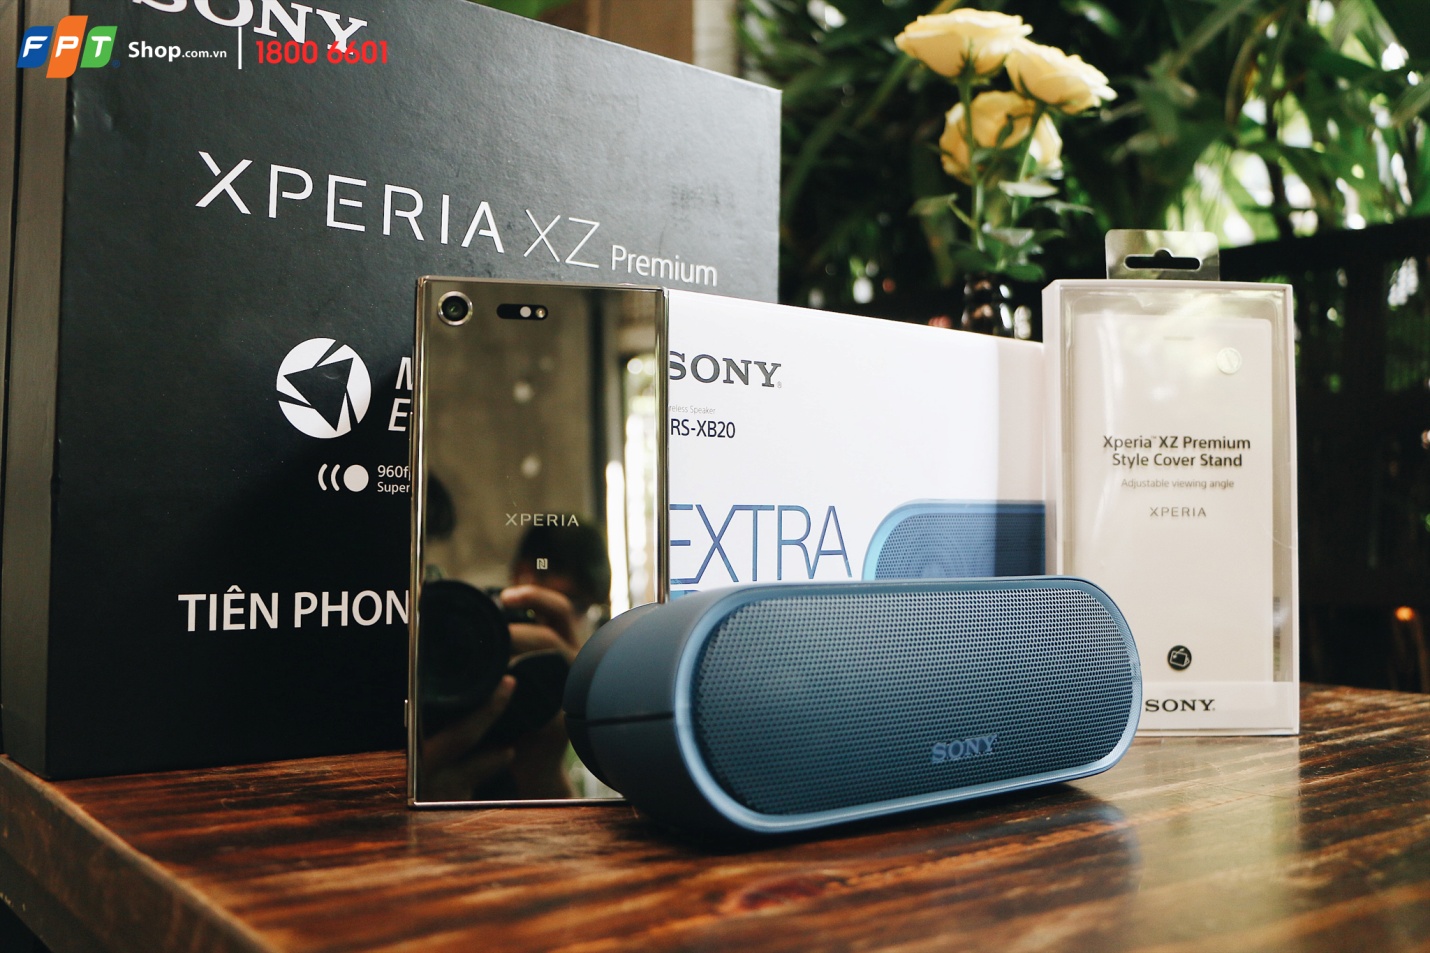 Sony Xperia XZ Premium chính thức lên kệ tại FPT Shop từ ngày 24/6